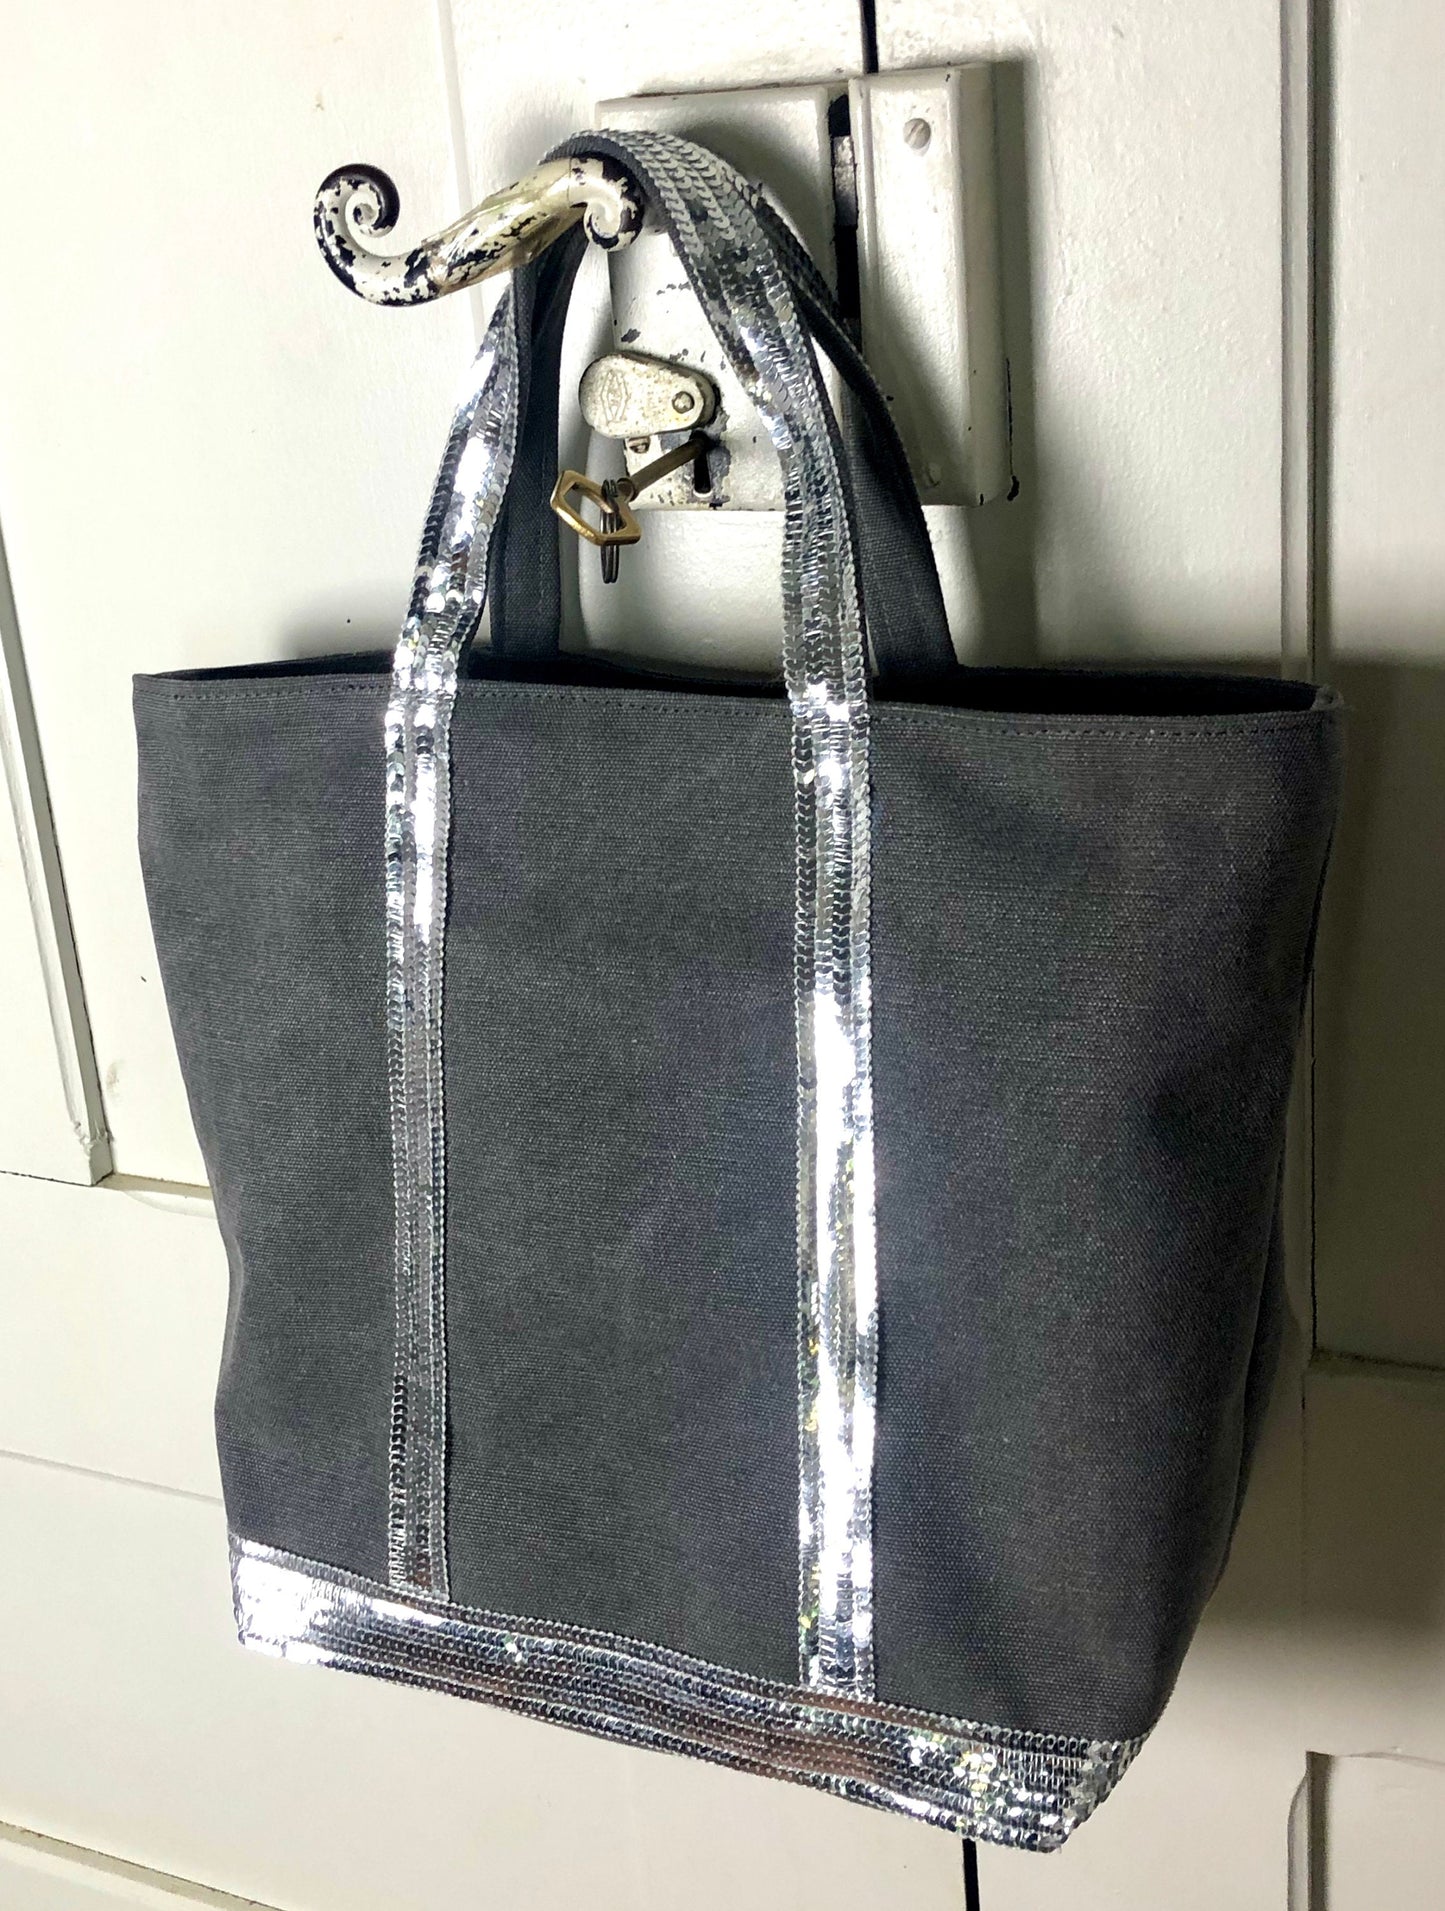 Sac cabas gris paillettes - sac cabas gris avec sequins - cabas maman - sac personnalisé